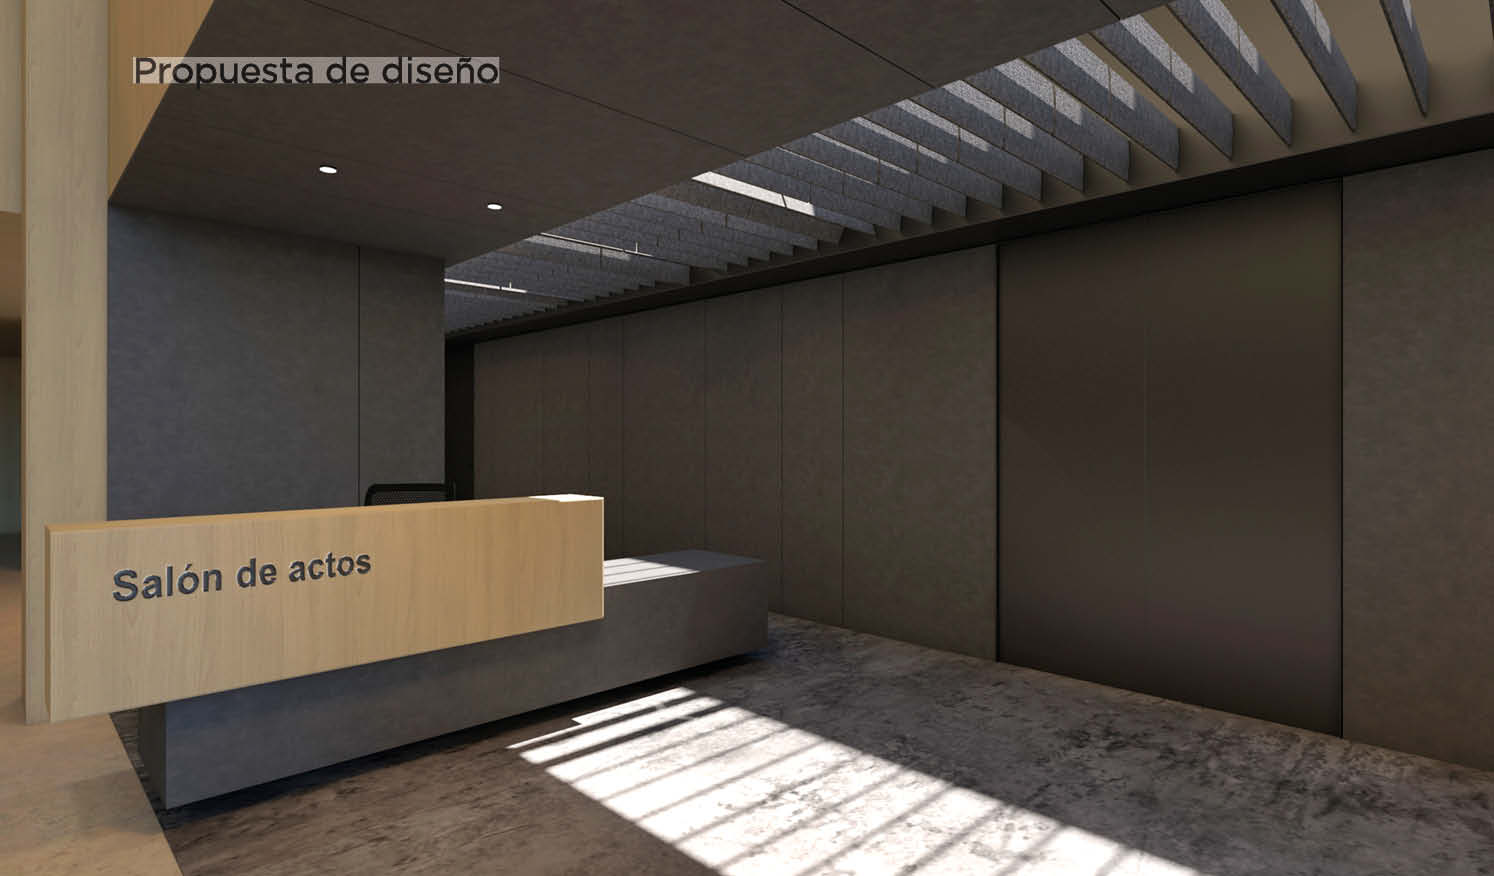 Santalucía_Auditorio en edificio de oficinas, proyecto Design&Build de salón de actos corporativo_Propuesta de diseño con renders